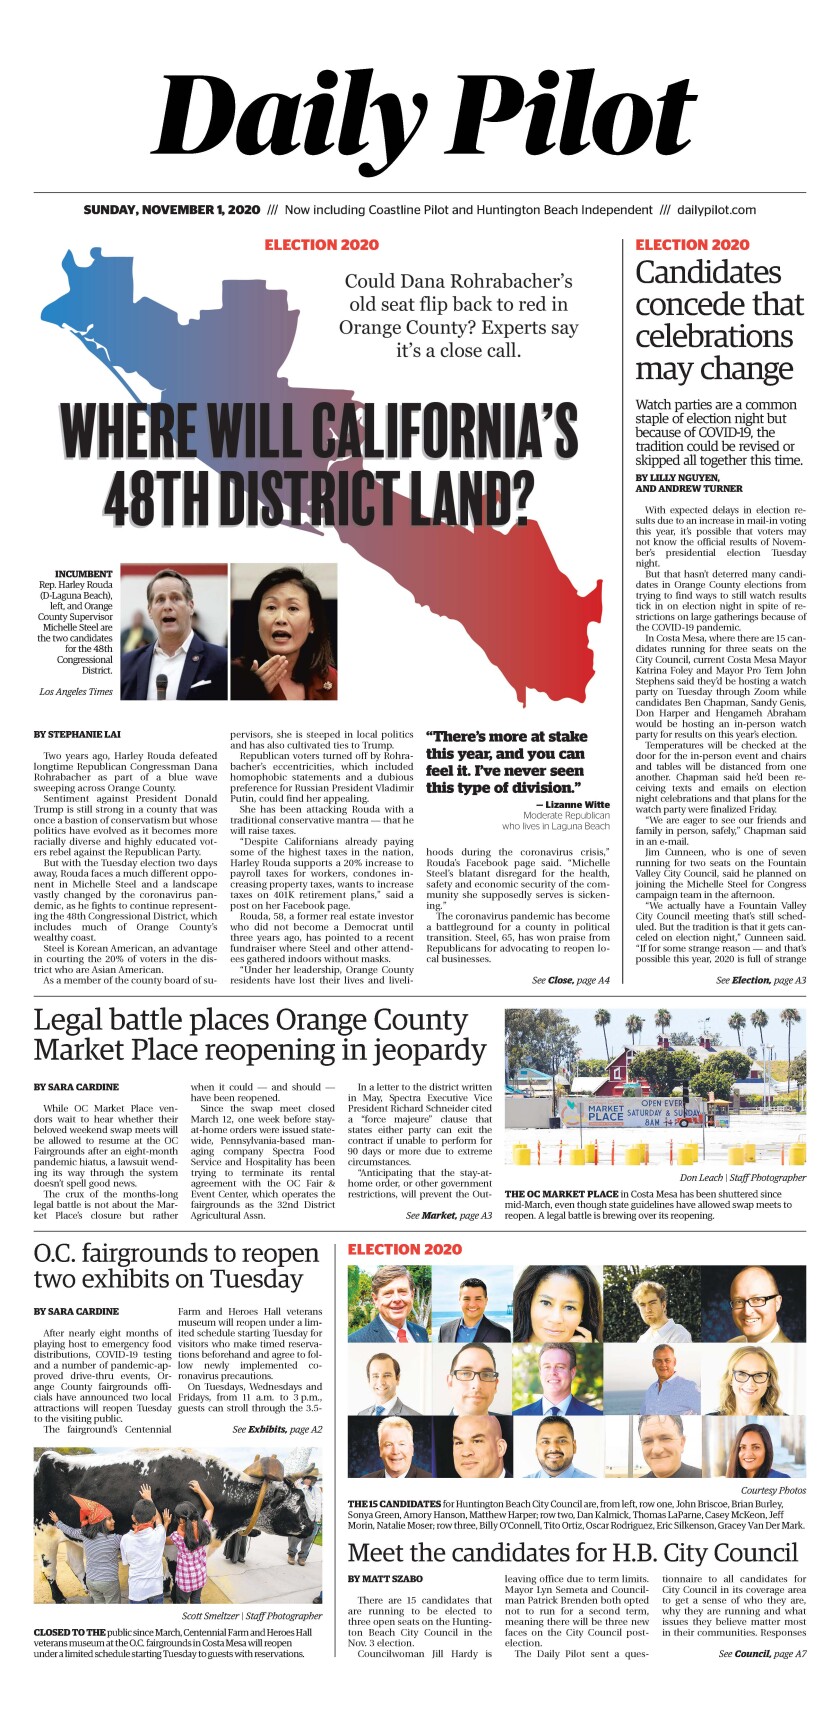 Daily Pilot e-Newspaper: Sunday, Nov. 1, 2020 - Los Angeles Times